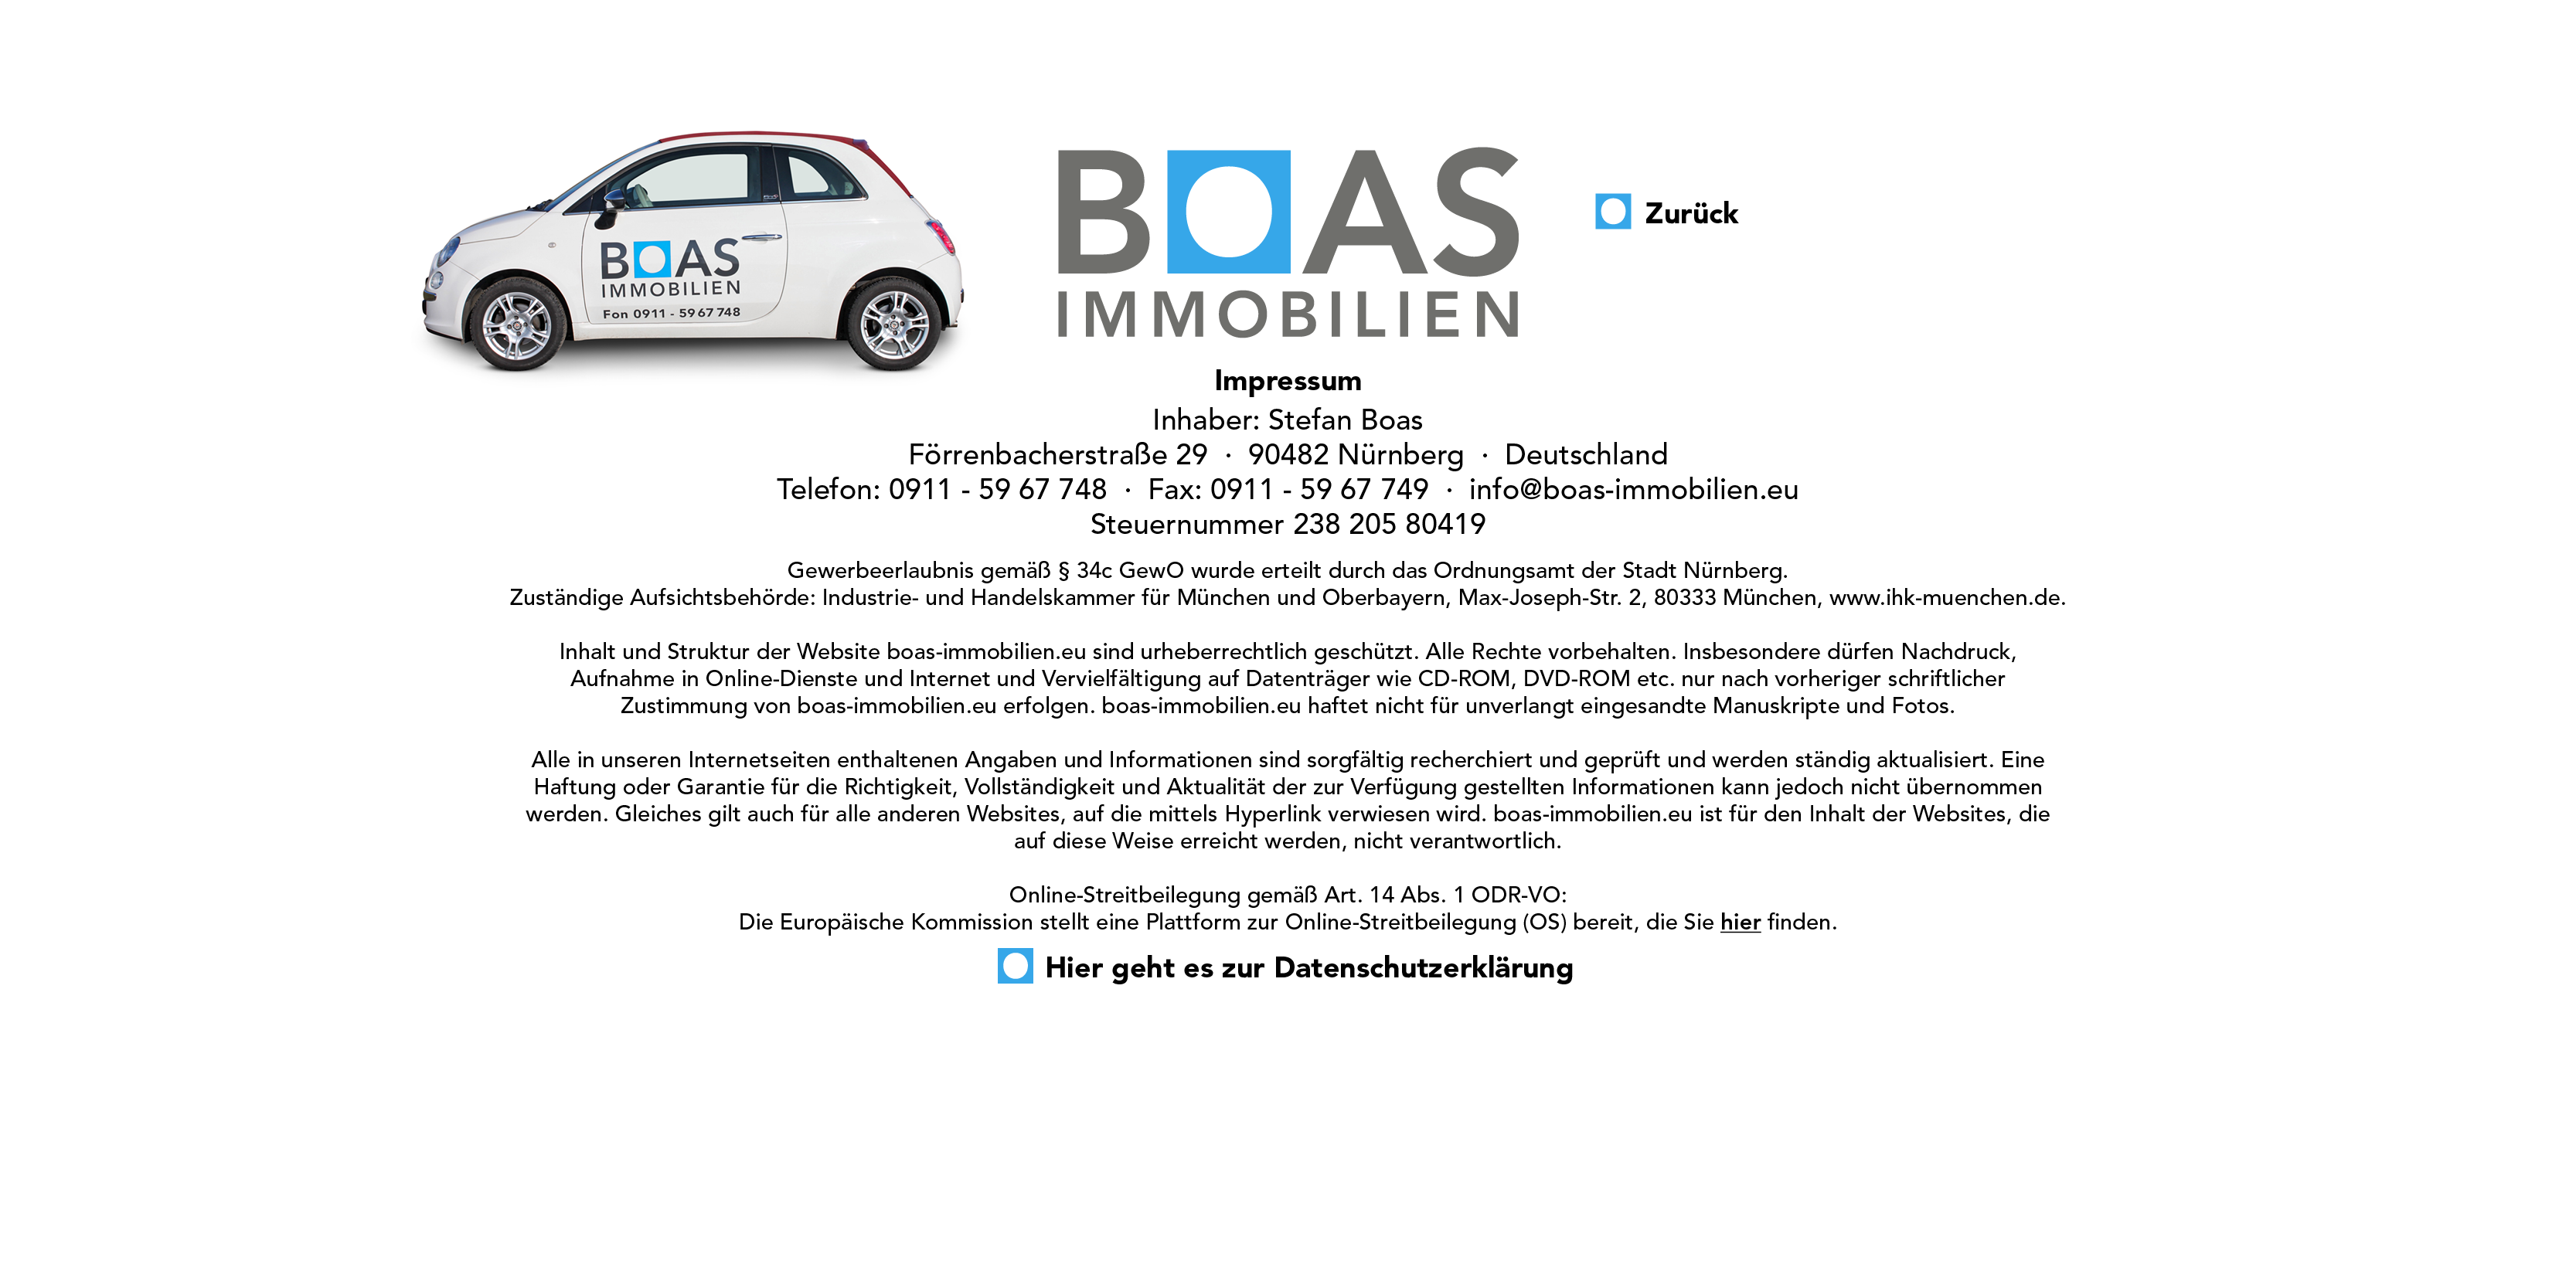 BOAS Website Impressum